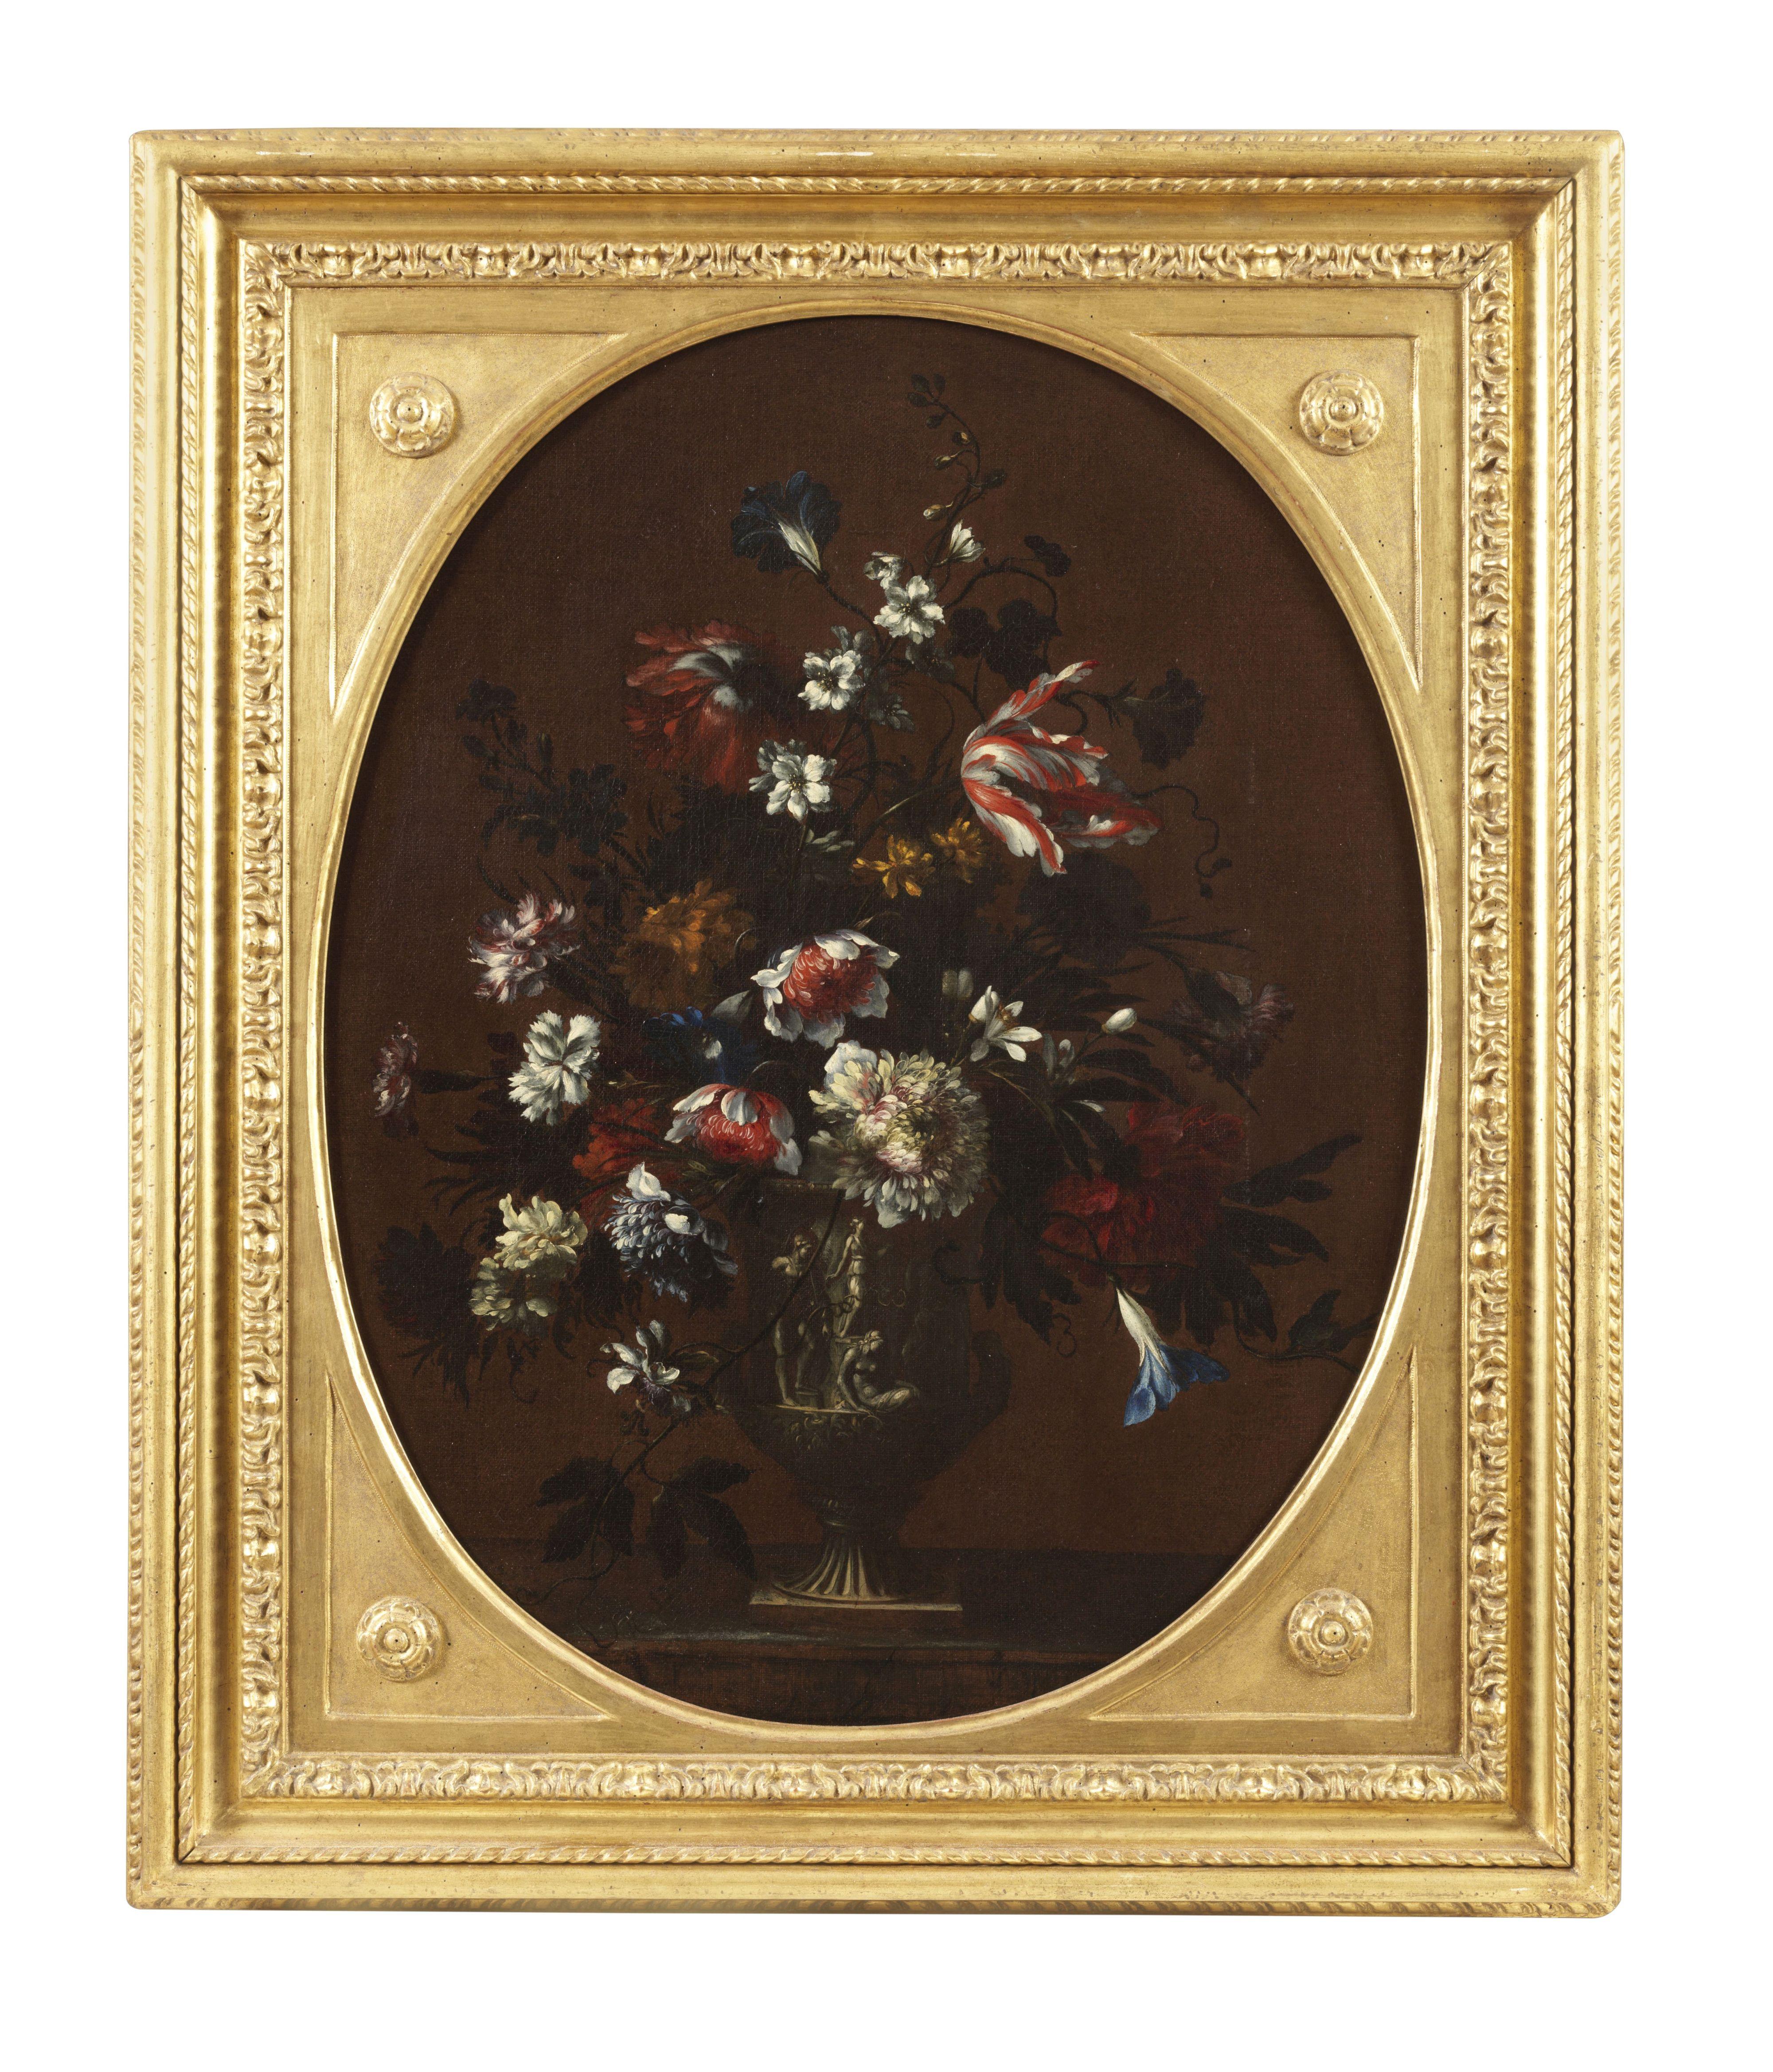 Tableau, huile sur toile, mesurant 82 x 67,5 sans cadre et 98 x 82 cm avec cadre, du peintre Nicolas Baudesson ( Troyes 1611 - Paris 1680 ).
Né à Troyes dans une famille d'artistes Nicolas Up&Up, malgré quelques retours dans sa patrie, grandit et